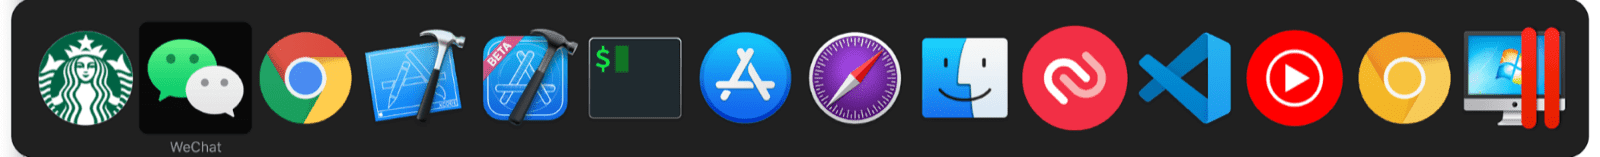 macOS 多工切換器包含小型應用程式和一般 macOS 應用程式。